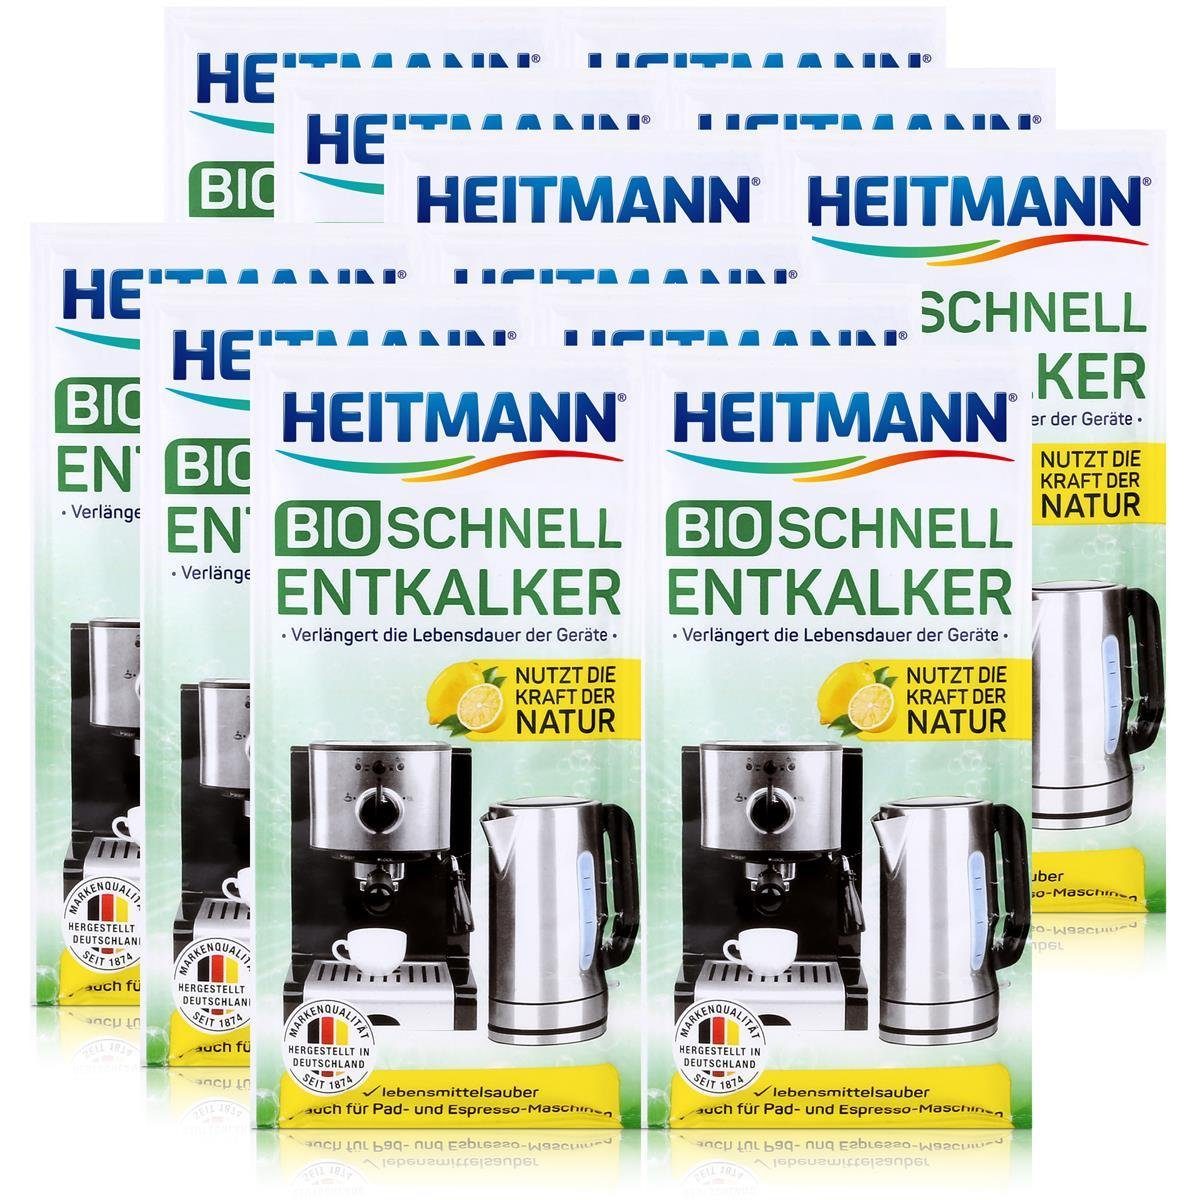 Schnell-Entkalker HEITMANN Entkalker Heitmann Bio Universalentkalker 2x25g - Natürlicher